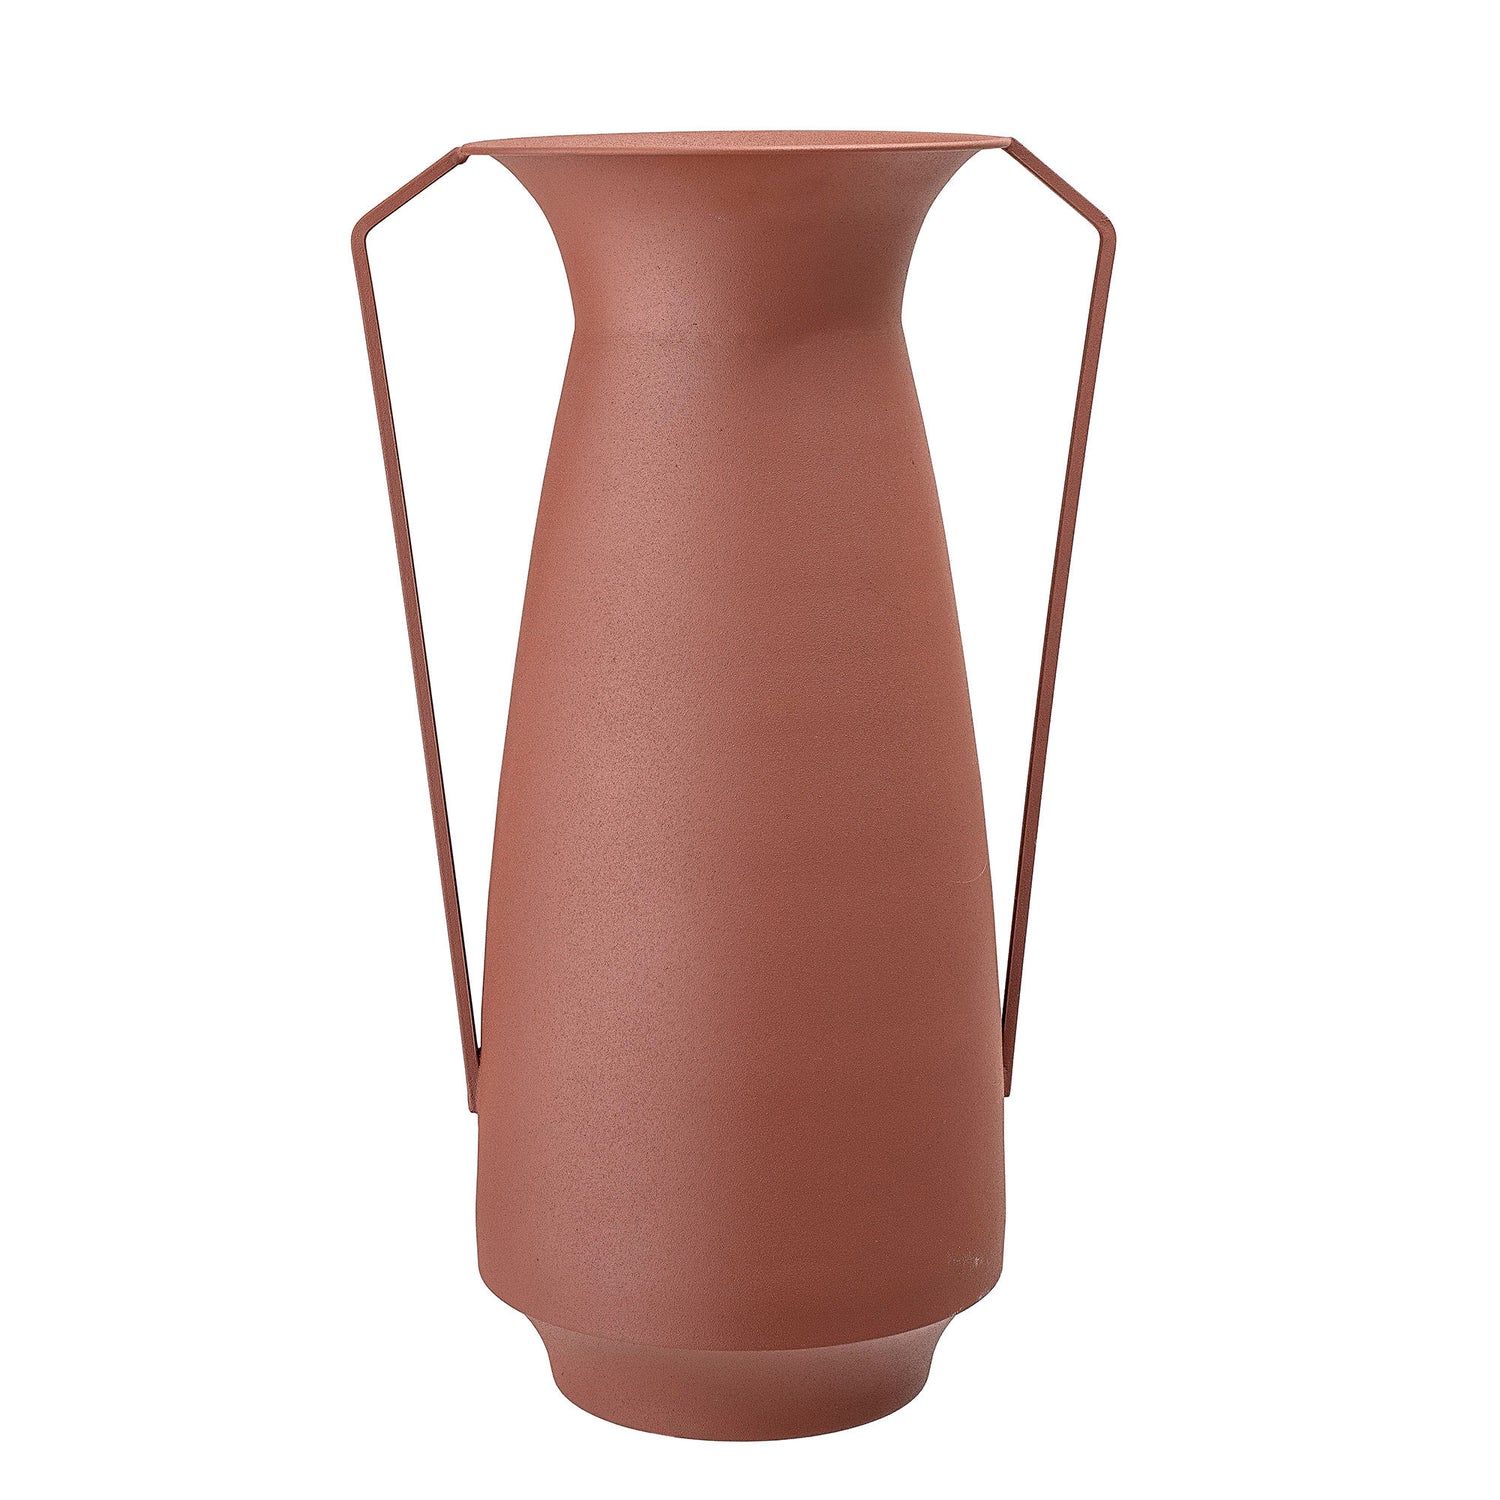 Bloomingville Rikkegro Vase, Braun, Metall